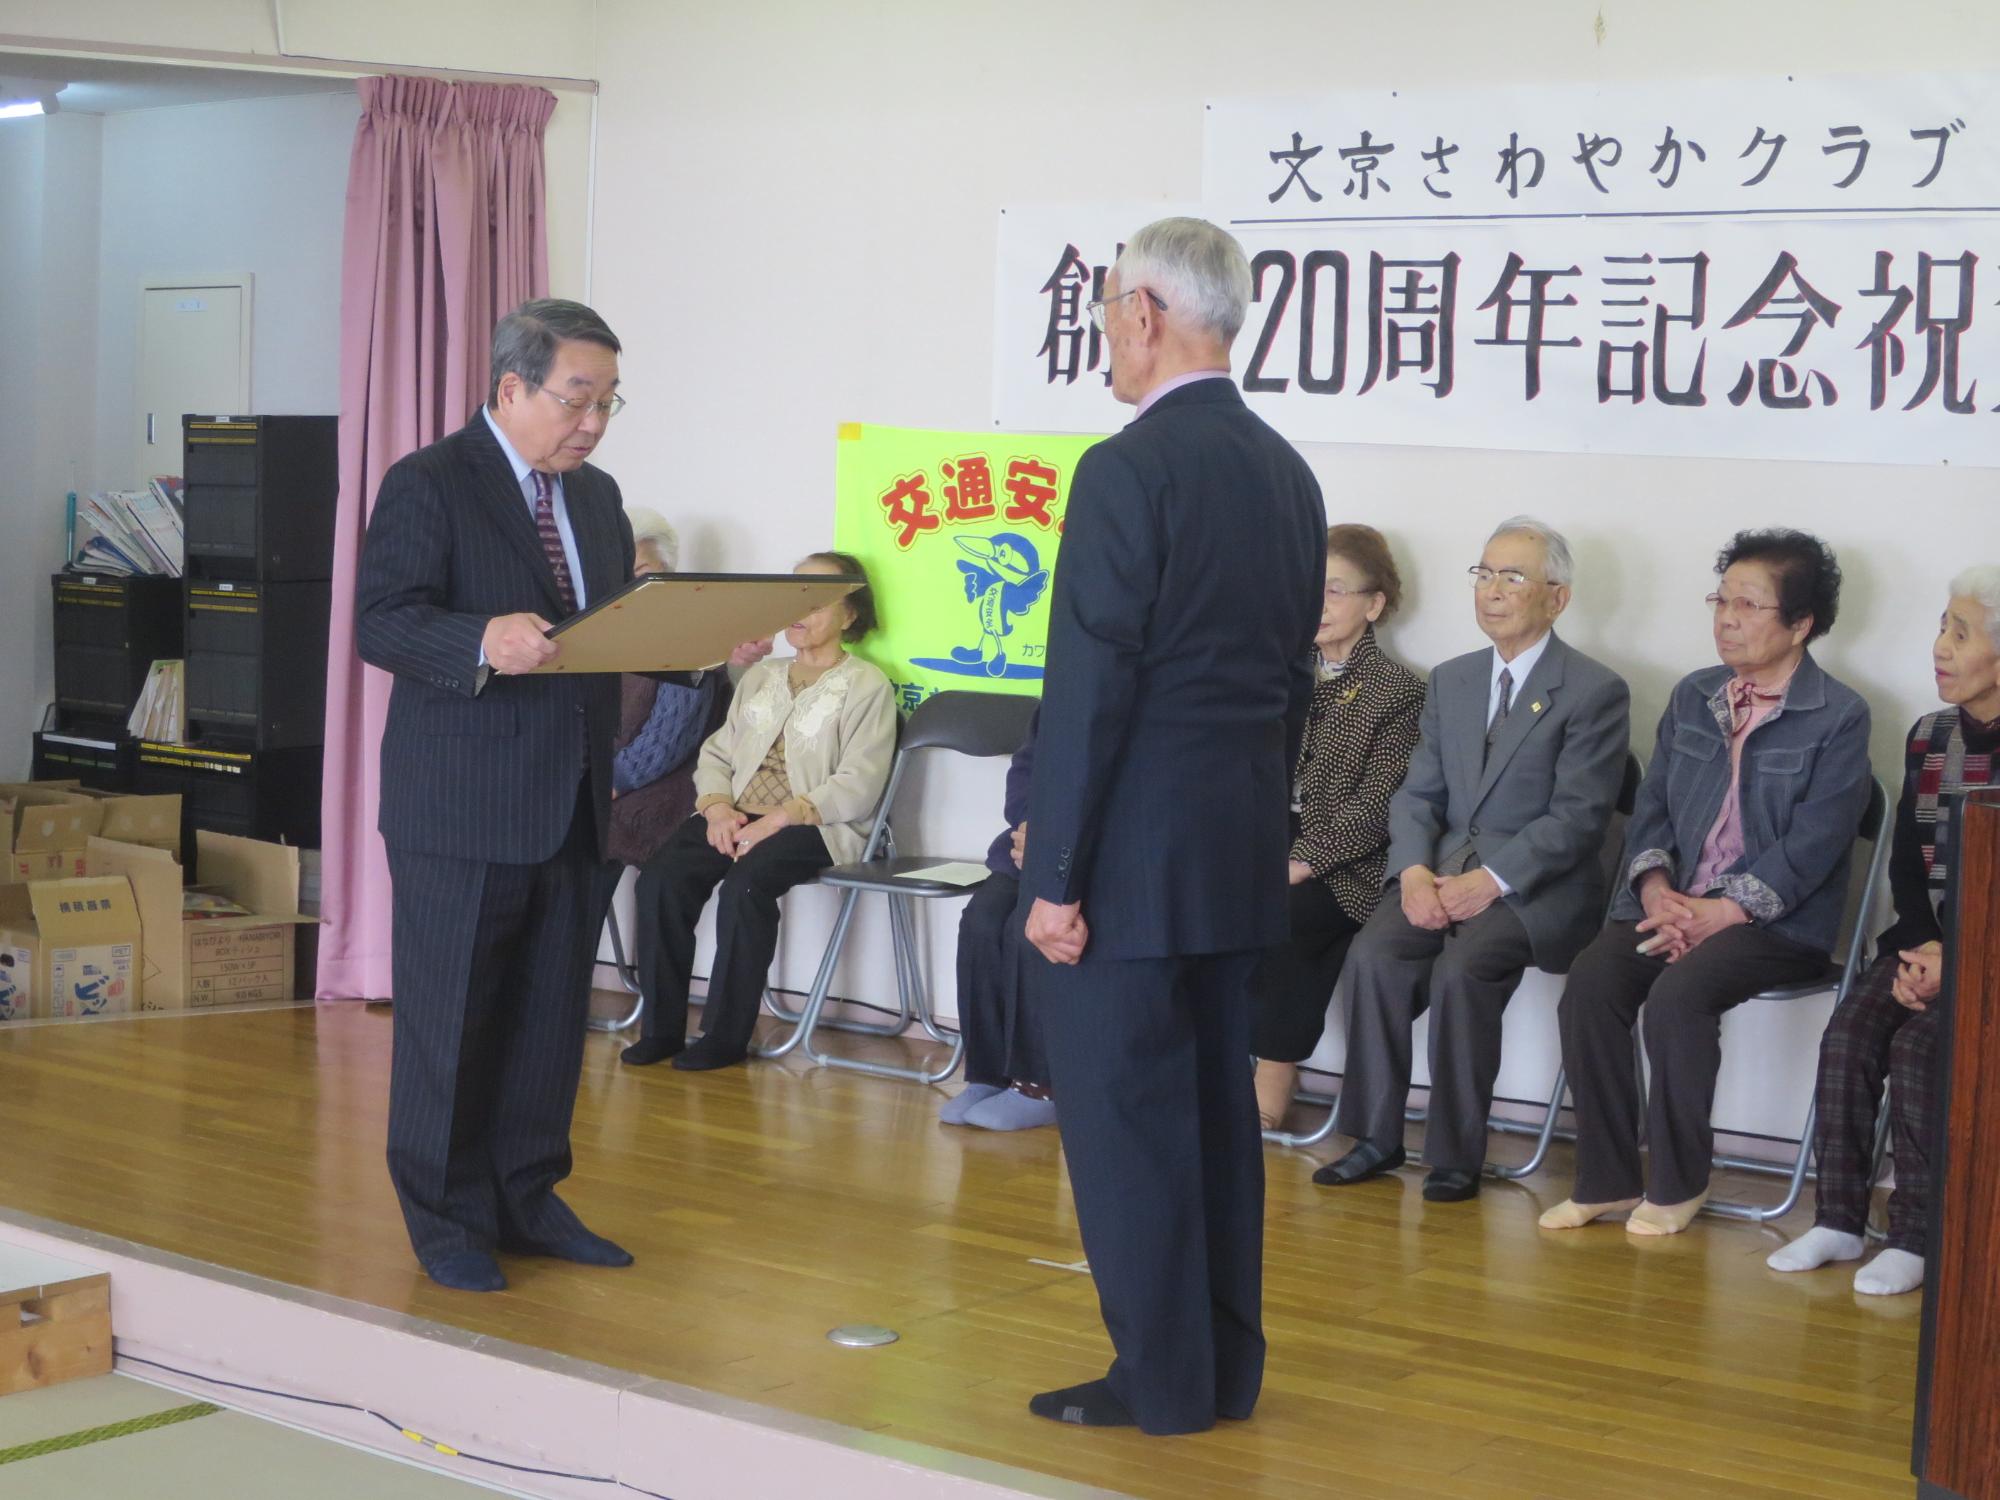 文京さわやかクラブ創立20周年記念祝賀会で表彰する原田市長